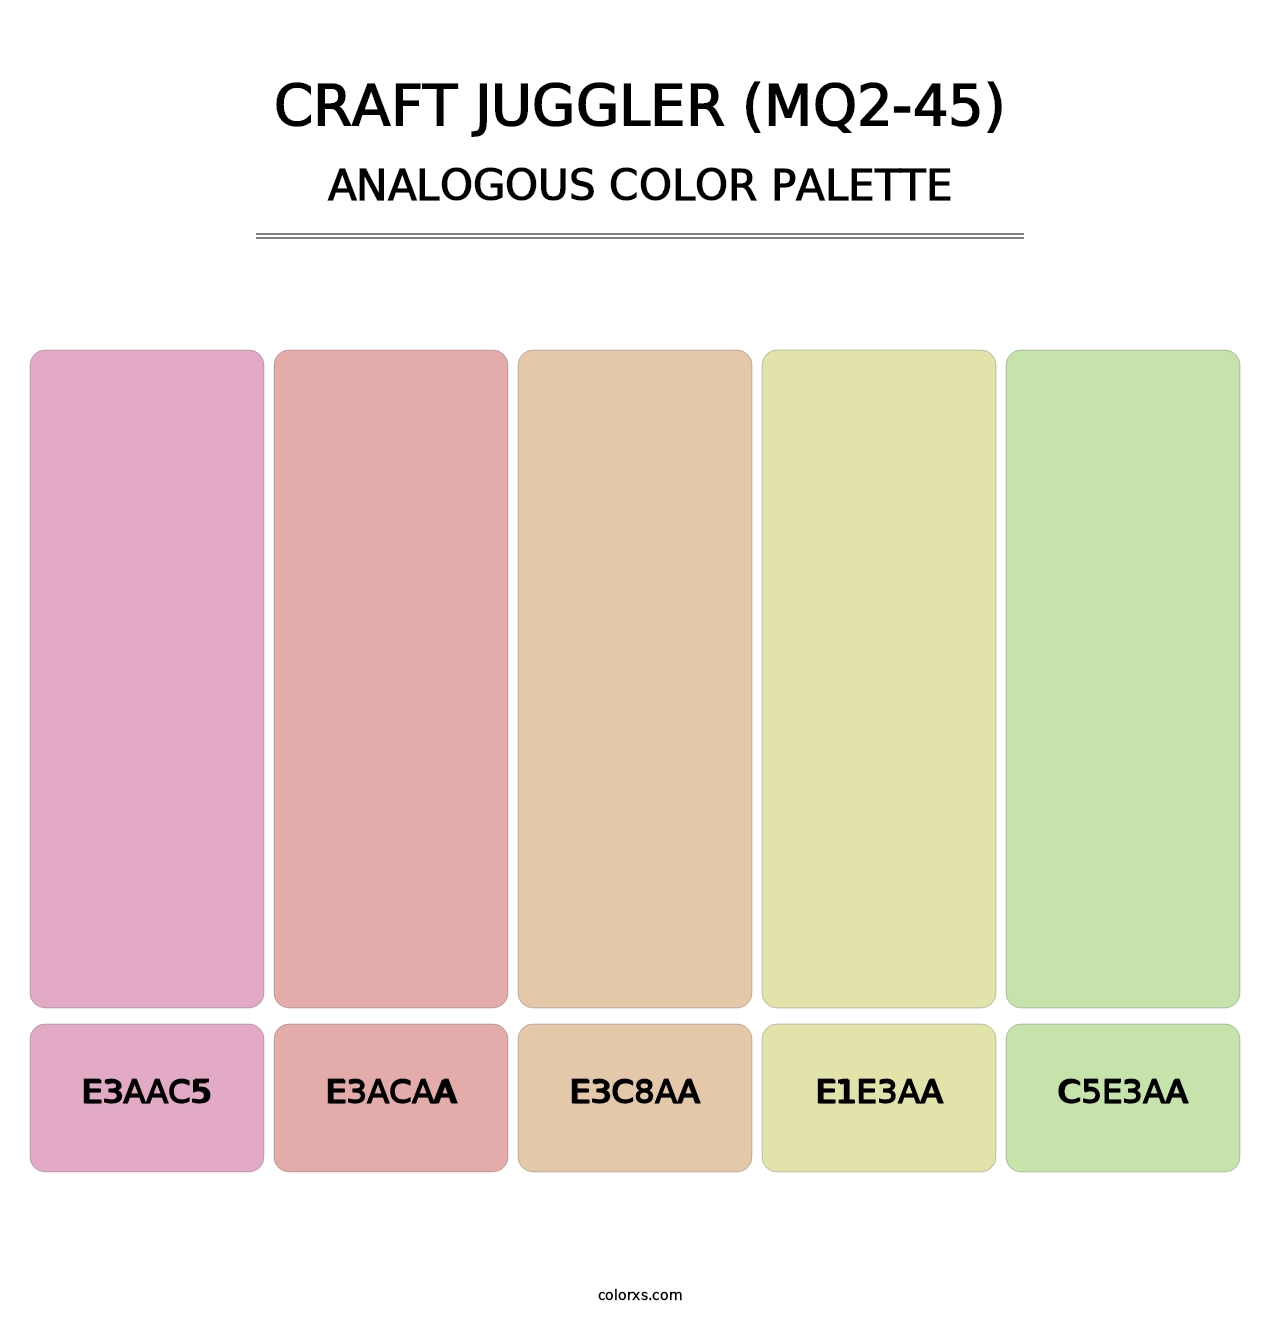 Craft Juggler (MQ2-45) - Analogous Color Palette